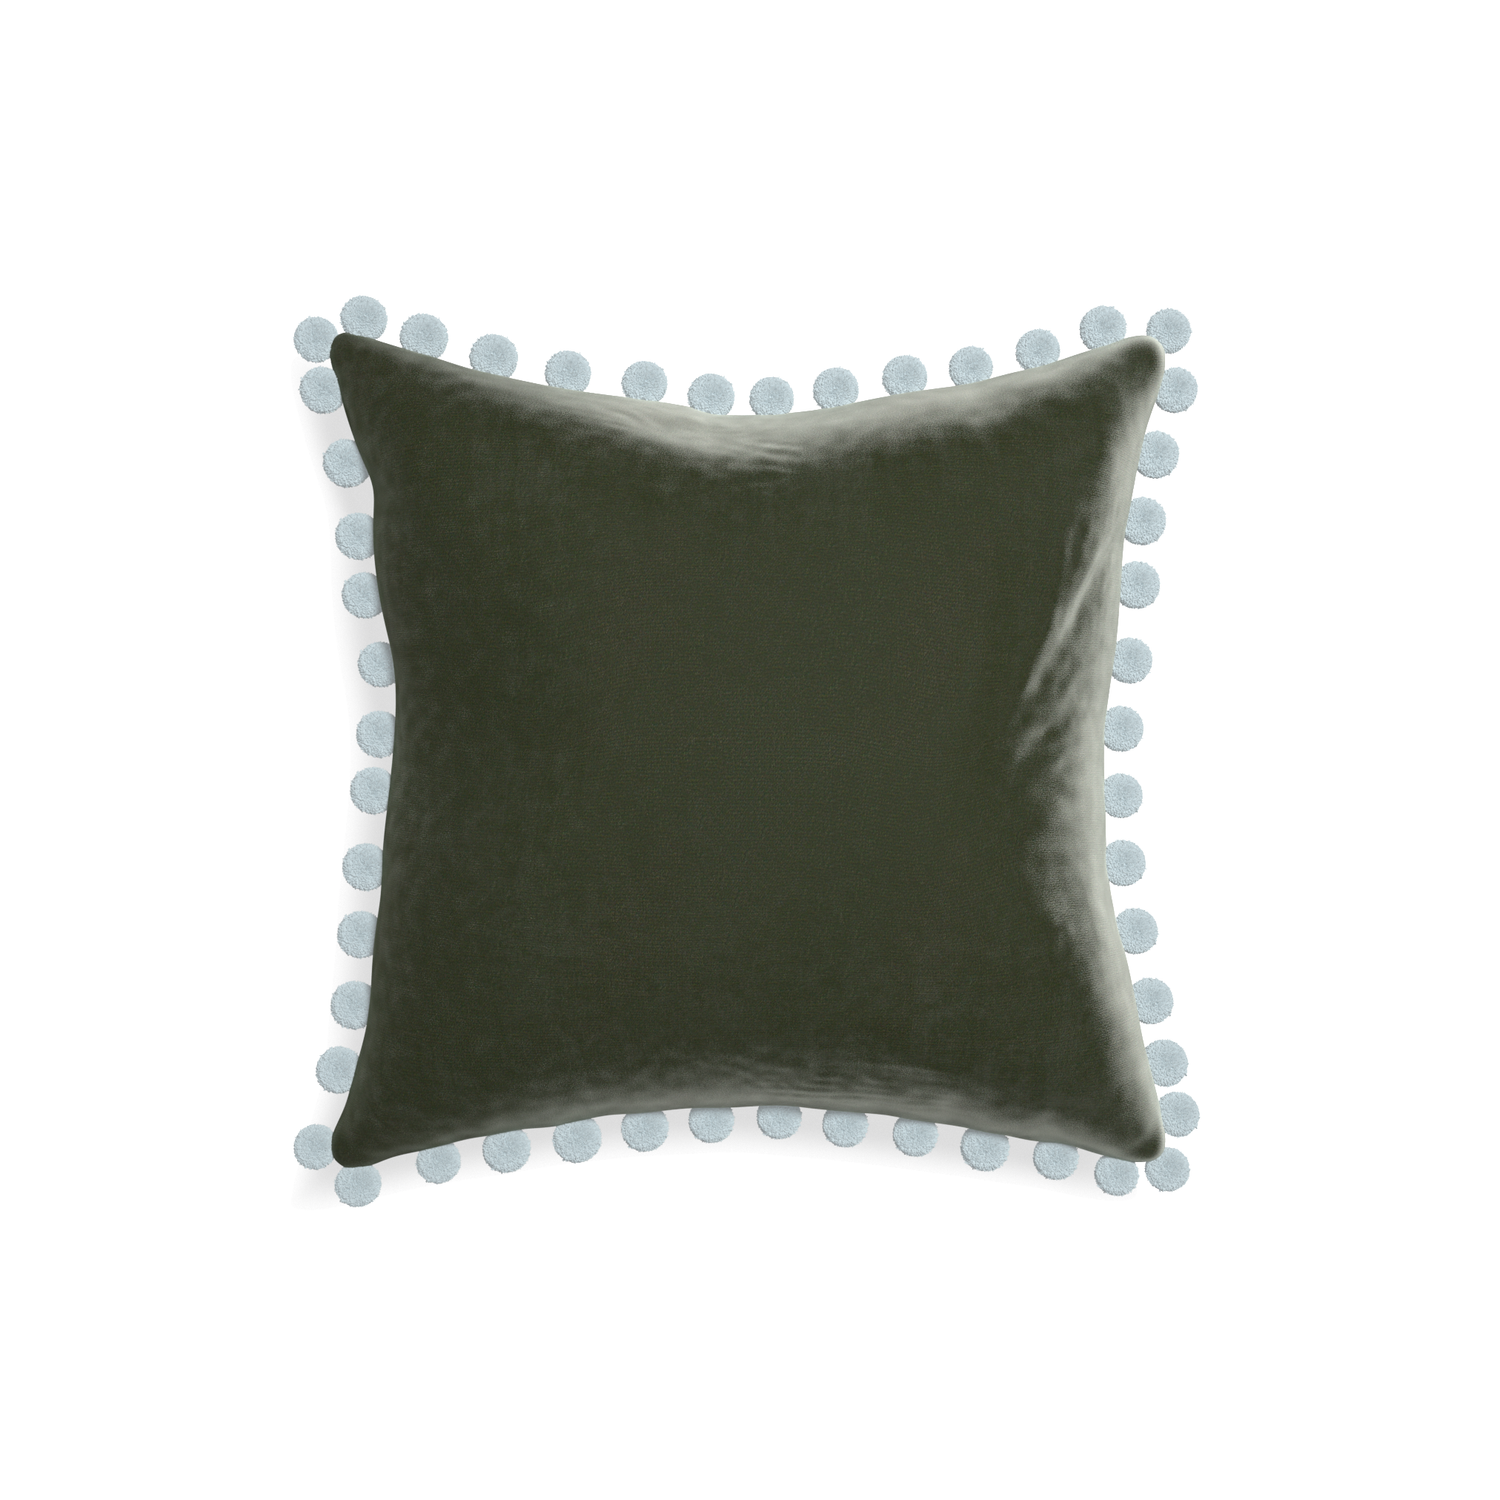 18-square fern velvet custom pillow with powder pom pom on white background